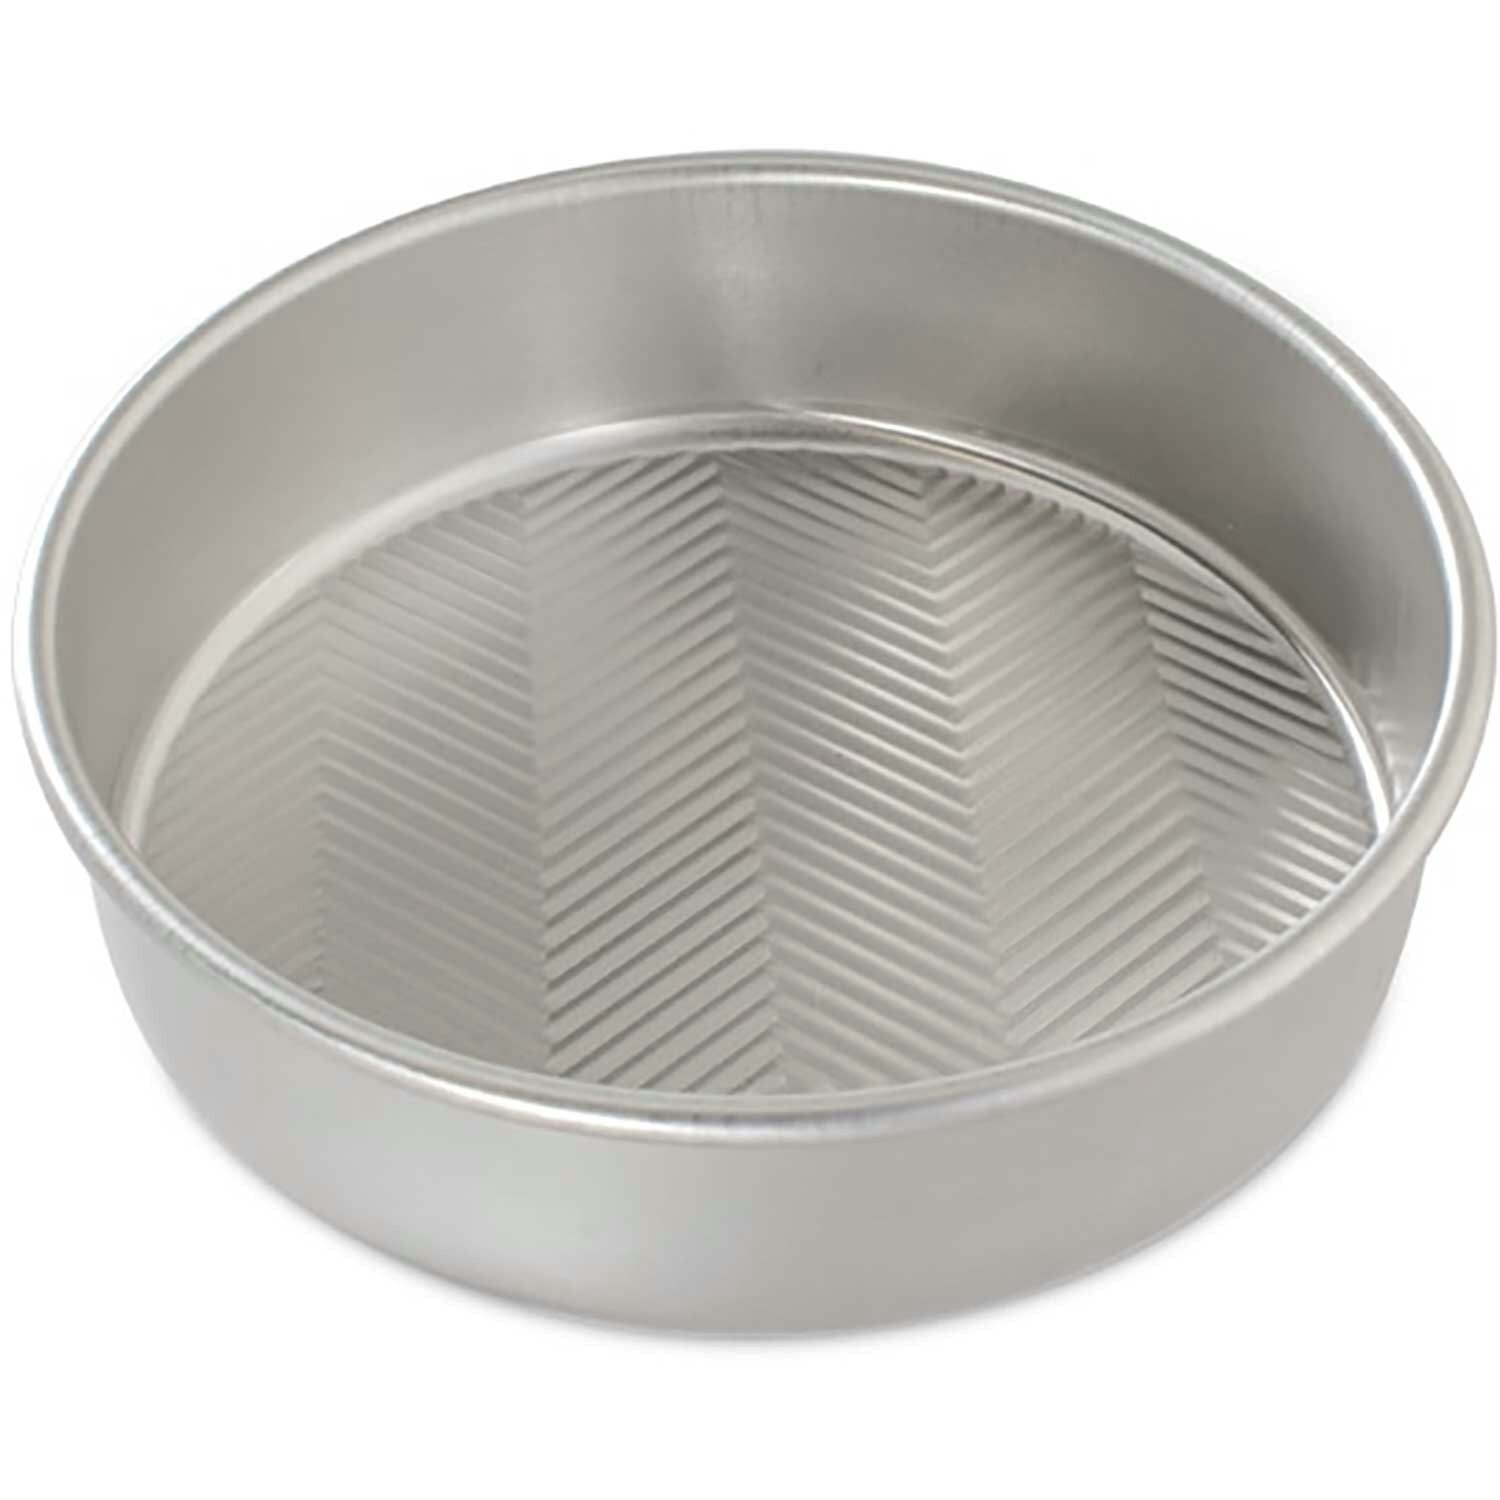 Prism 9x13 Rectangular Baking Pan